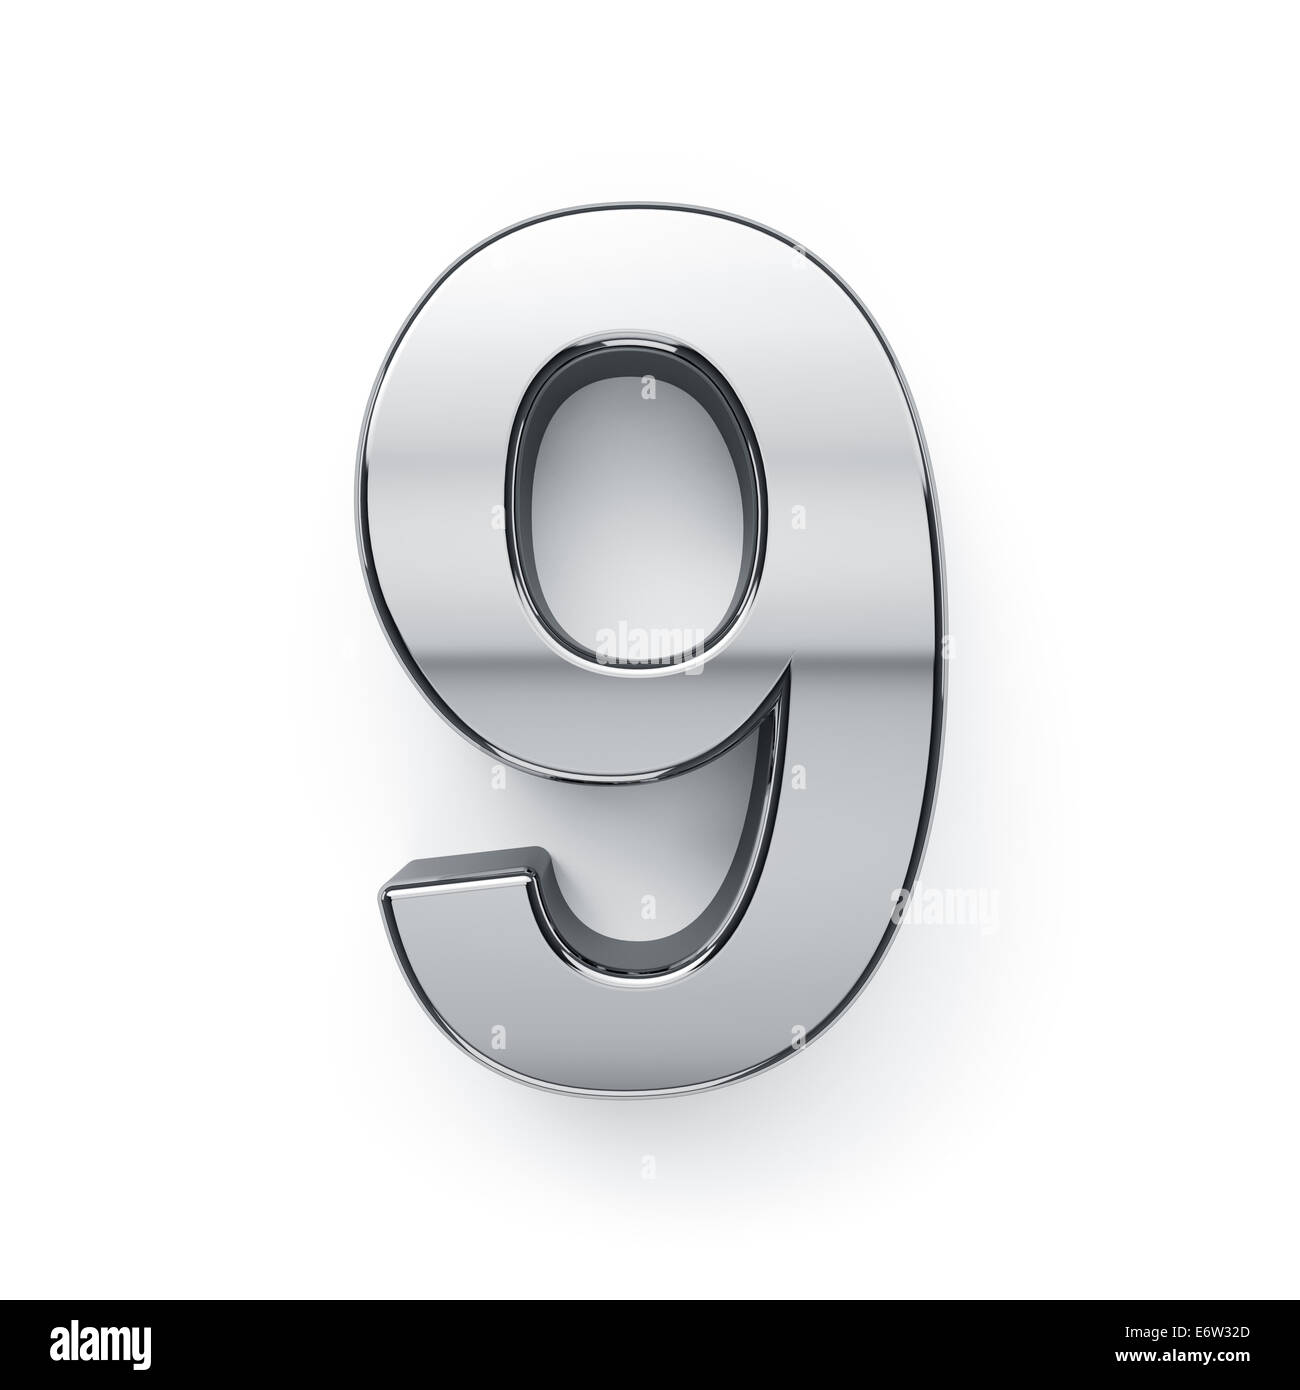 3D render metallico di nove cifre simbolo - 9. Isolato su sfondo bianco Foto Stock